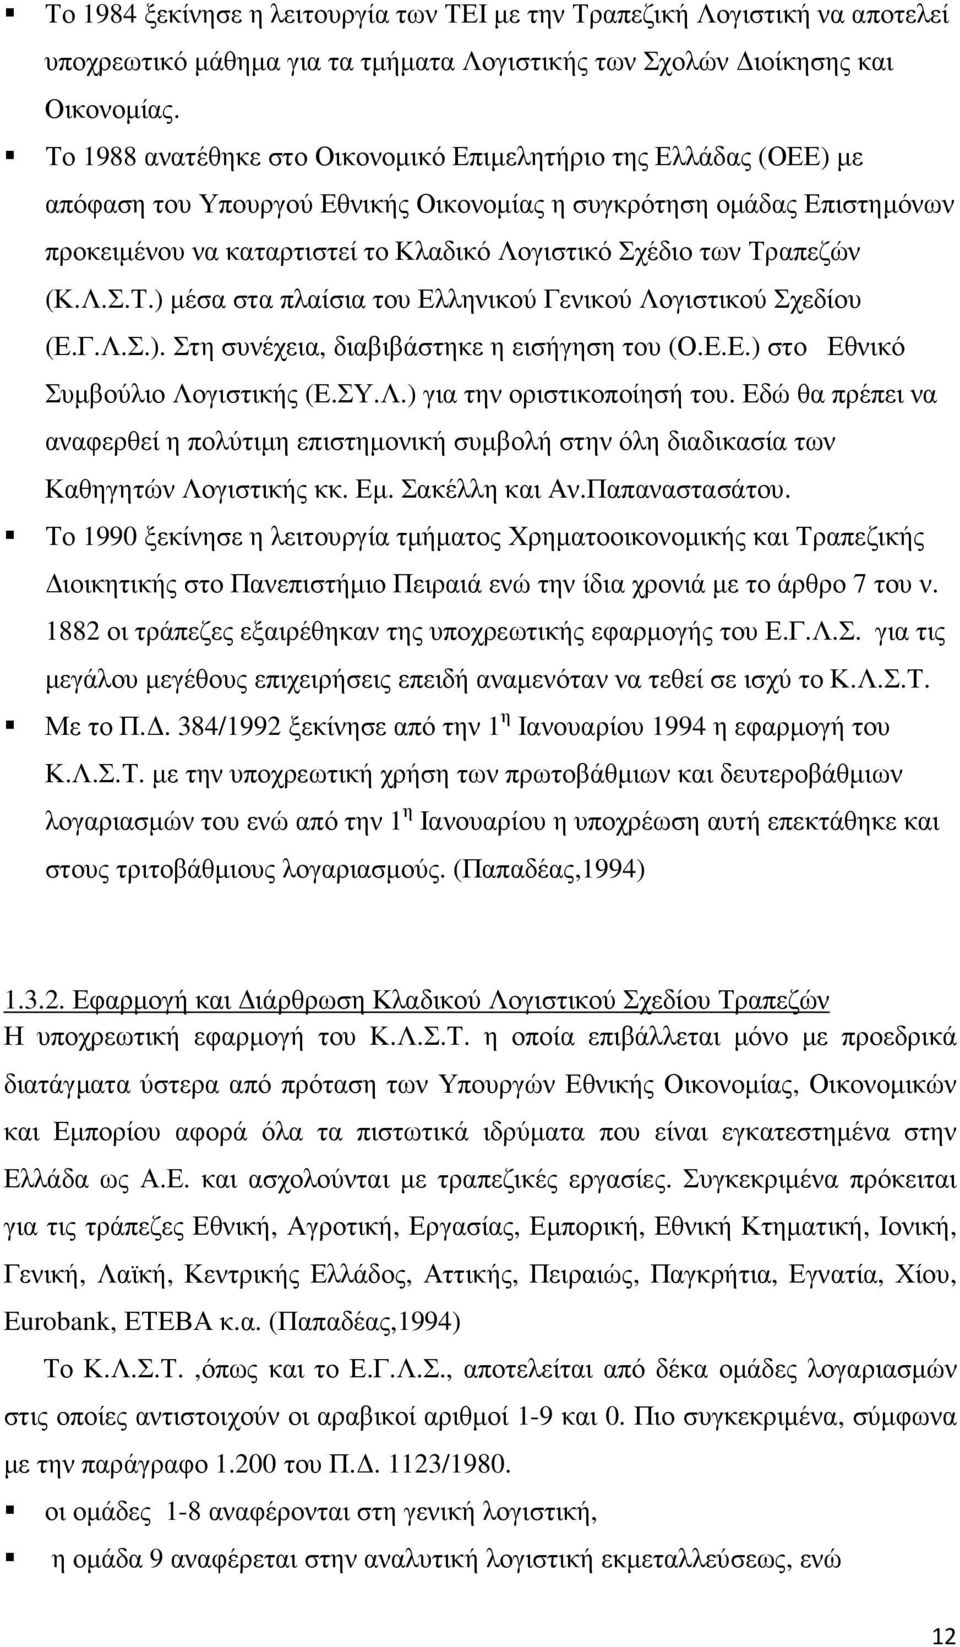 Τραπεζών (Κ.Λ.Σ.Τ.) µέσα στα πλαίσια του Ελληνικού Γενικού Λογιστικού Σχεδίου (Ε.Γ.Λ.Σ.). Στη συνέχεια, διαβιβάστηκε η εισήγηση του (Ο.Ε.Ε.) στο Εθνικό Συµβούλιο Λογιστικής (Ε.ΣΥ.Λ.) για την οριστικοποίησή του.